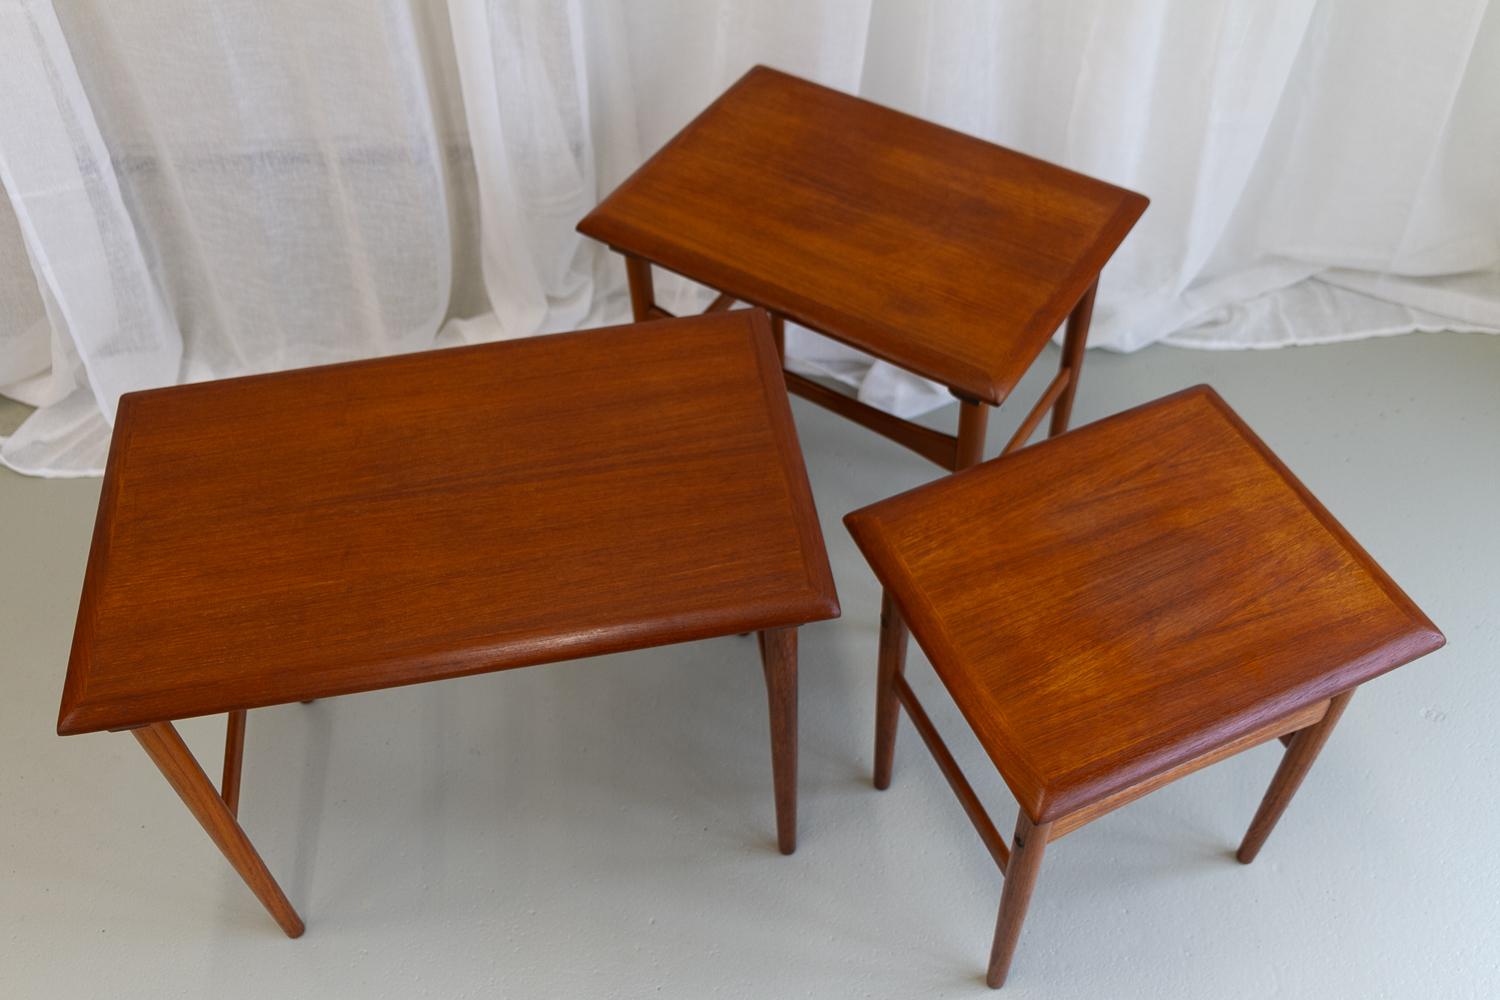 Mid-20th Century Danish Modern Teak Nesting Tables 1960s. Set of 3. For Sale